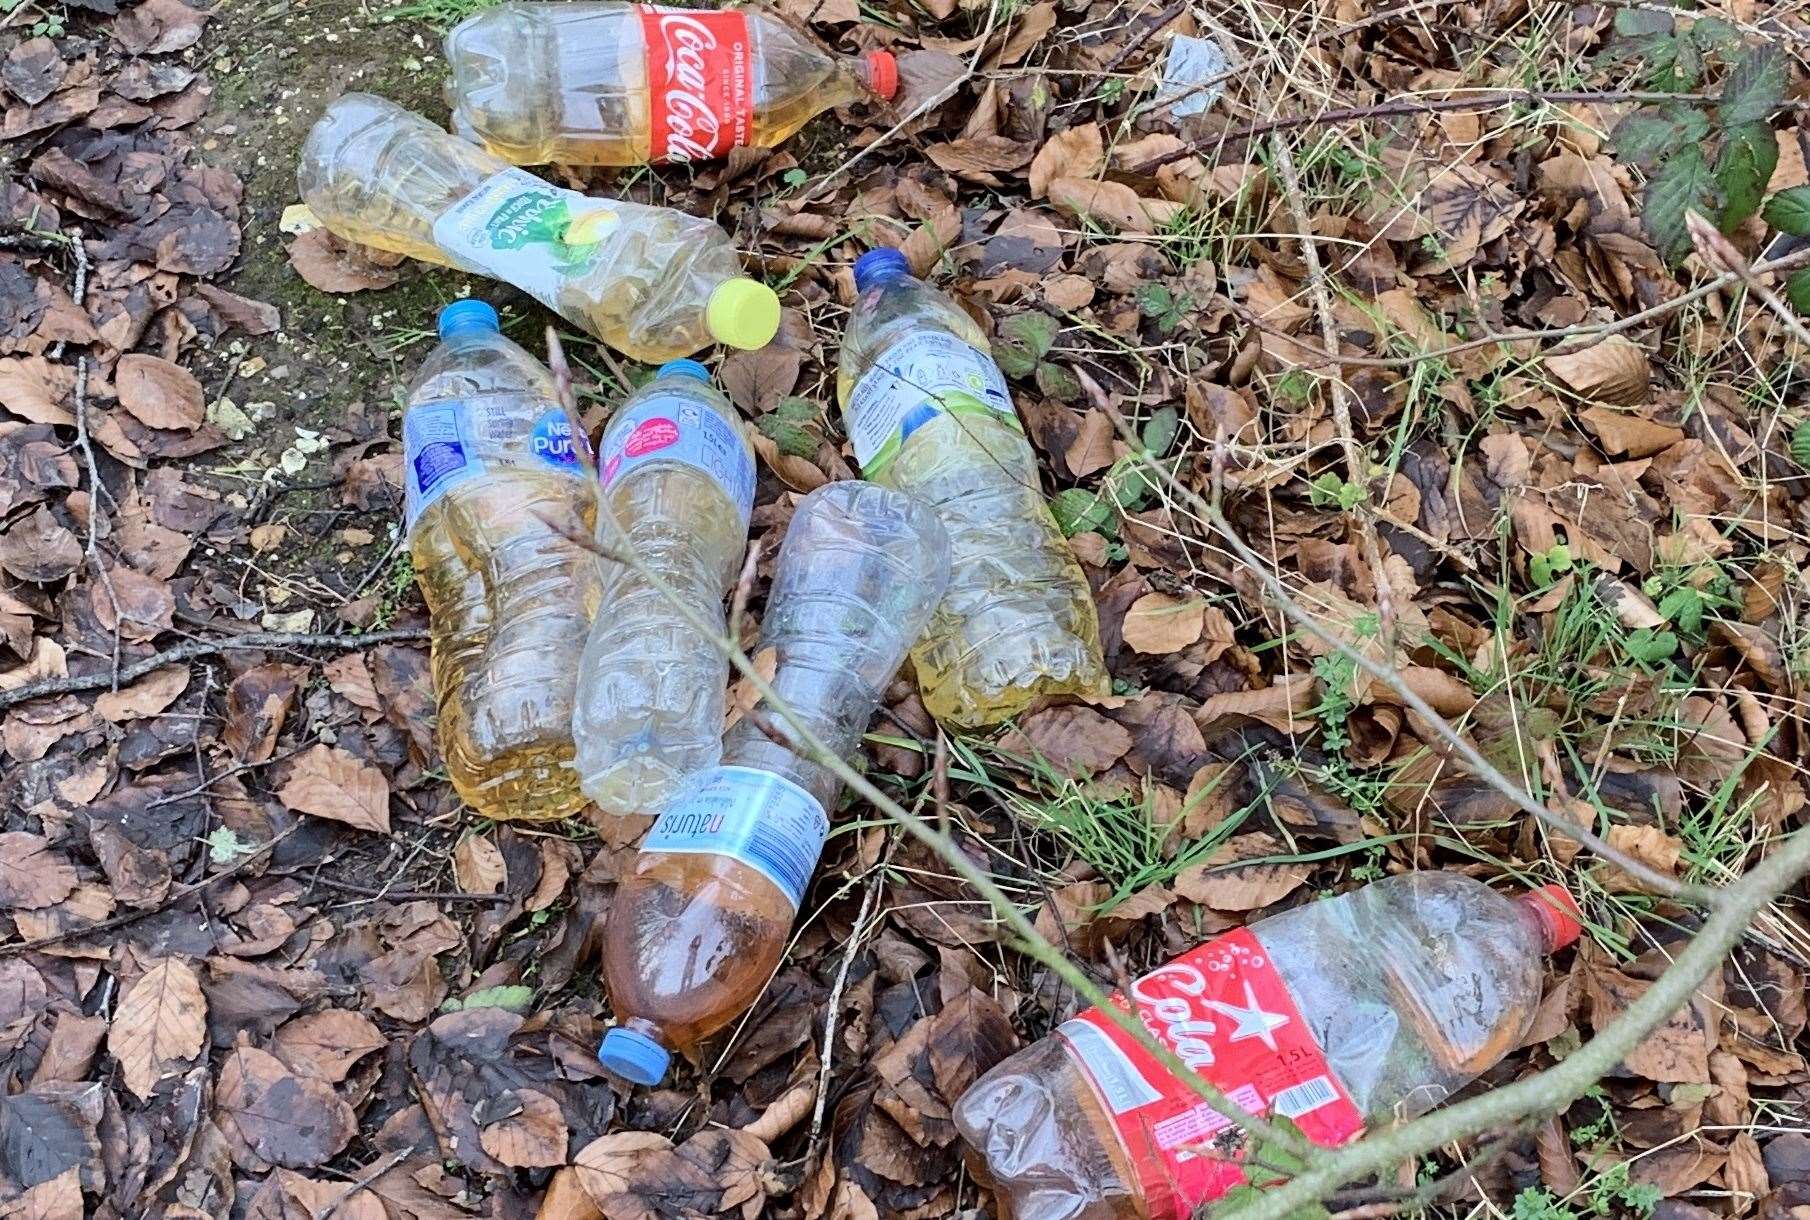 Bottles of urine at the roadside